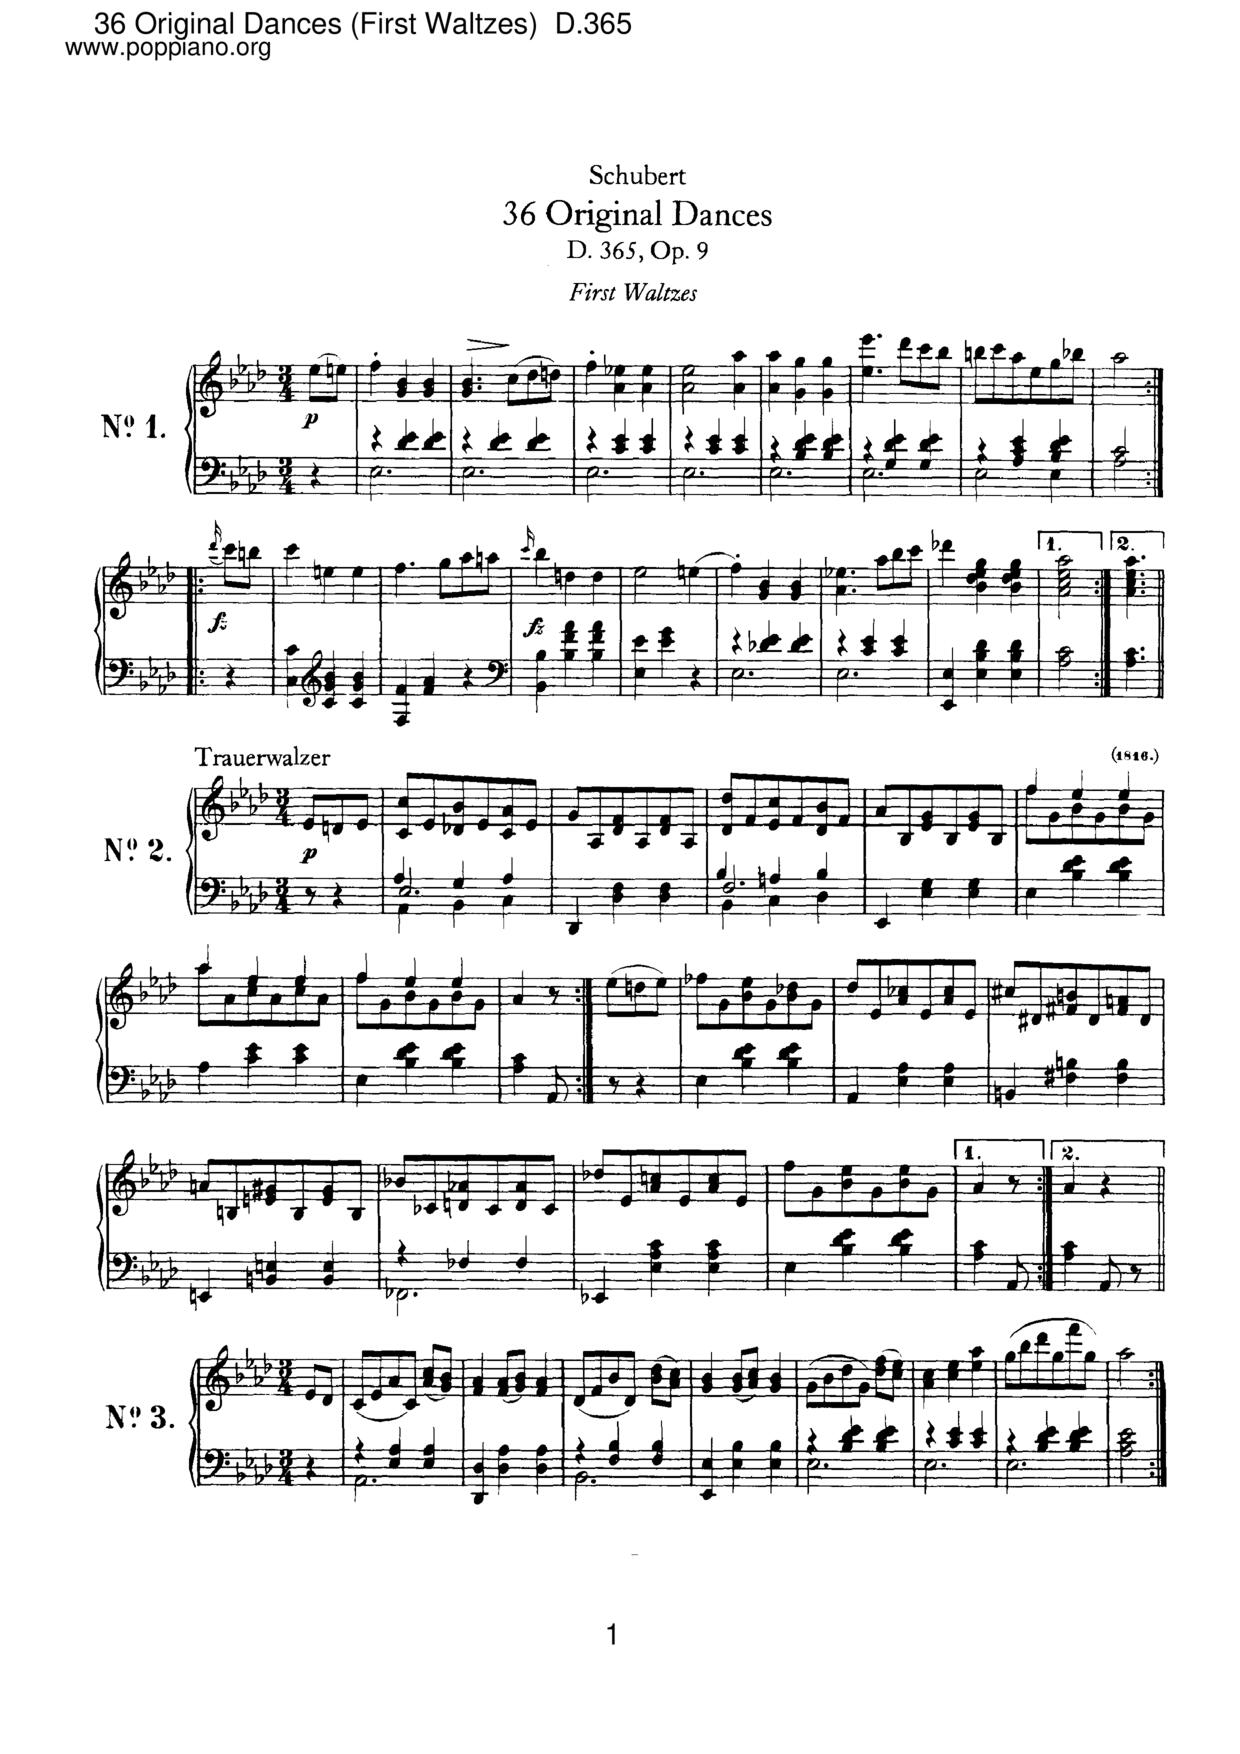 36 Original Dances (First Waltzes), D.365 (Op.9)ピアノ譜